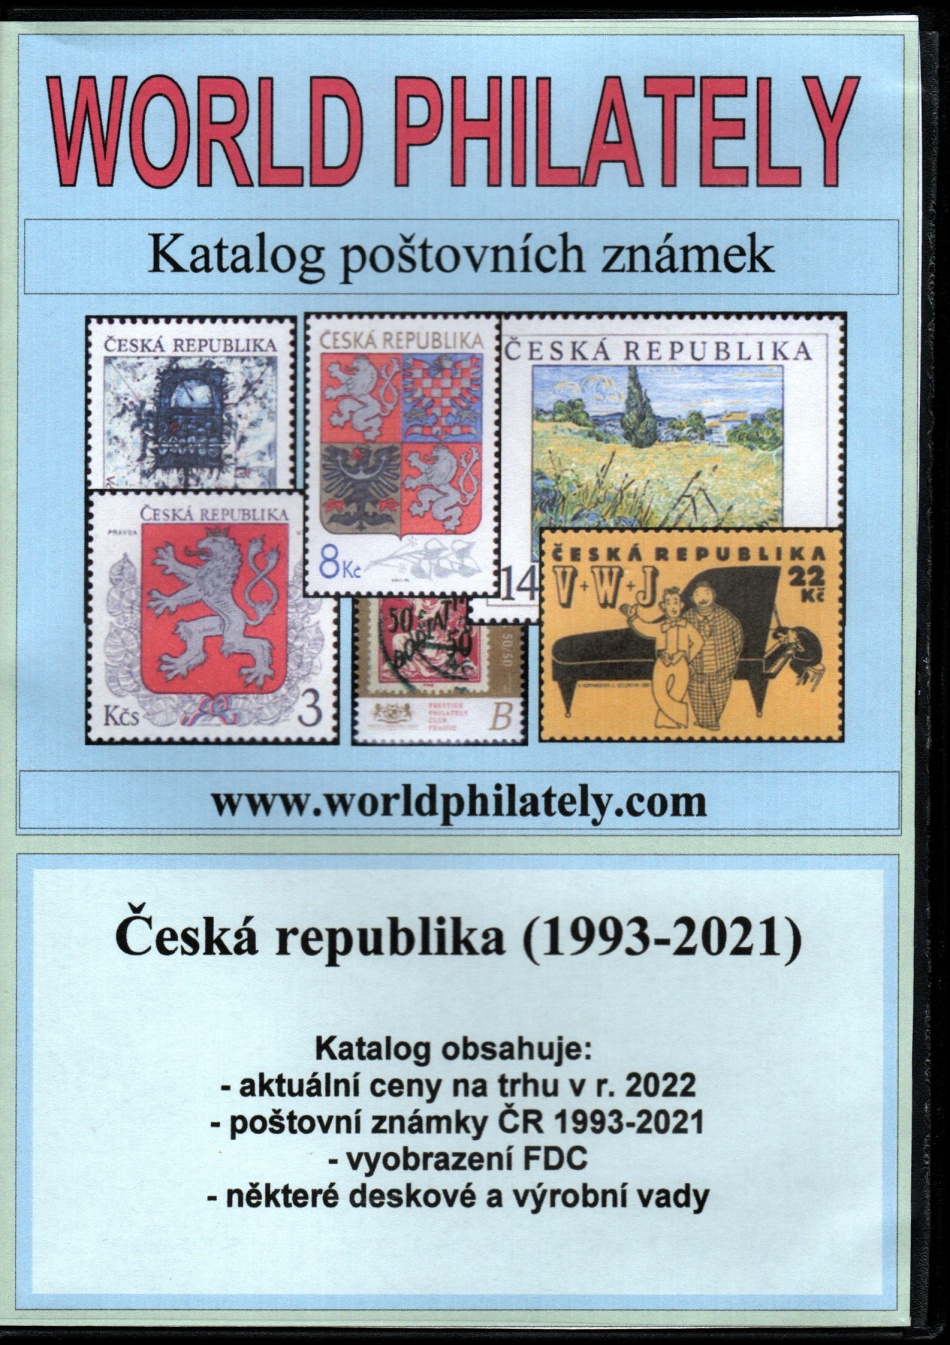 Katalog poštovních známek - Česká republika (1993-2021) - World Philately 2022  na CD-ROM médiu